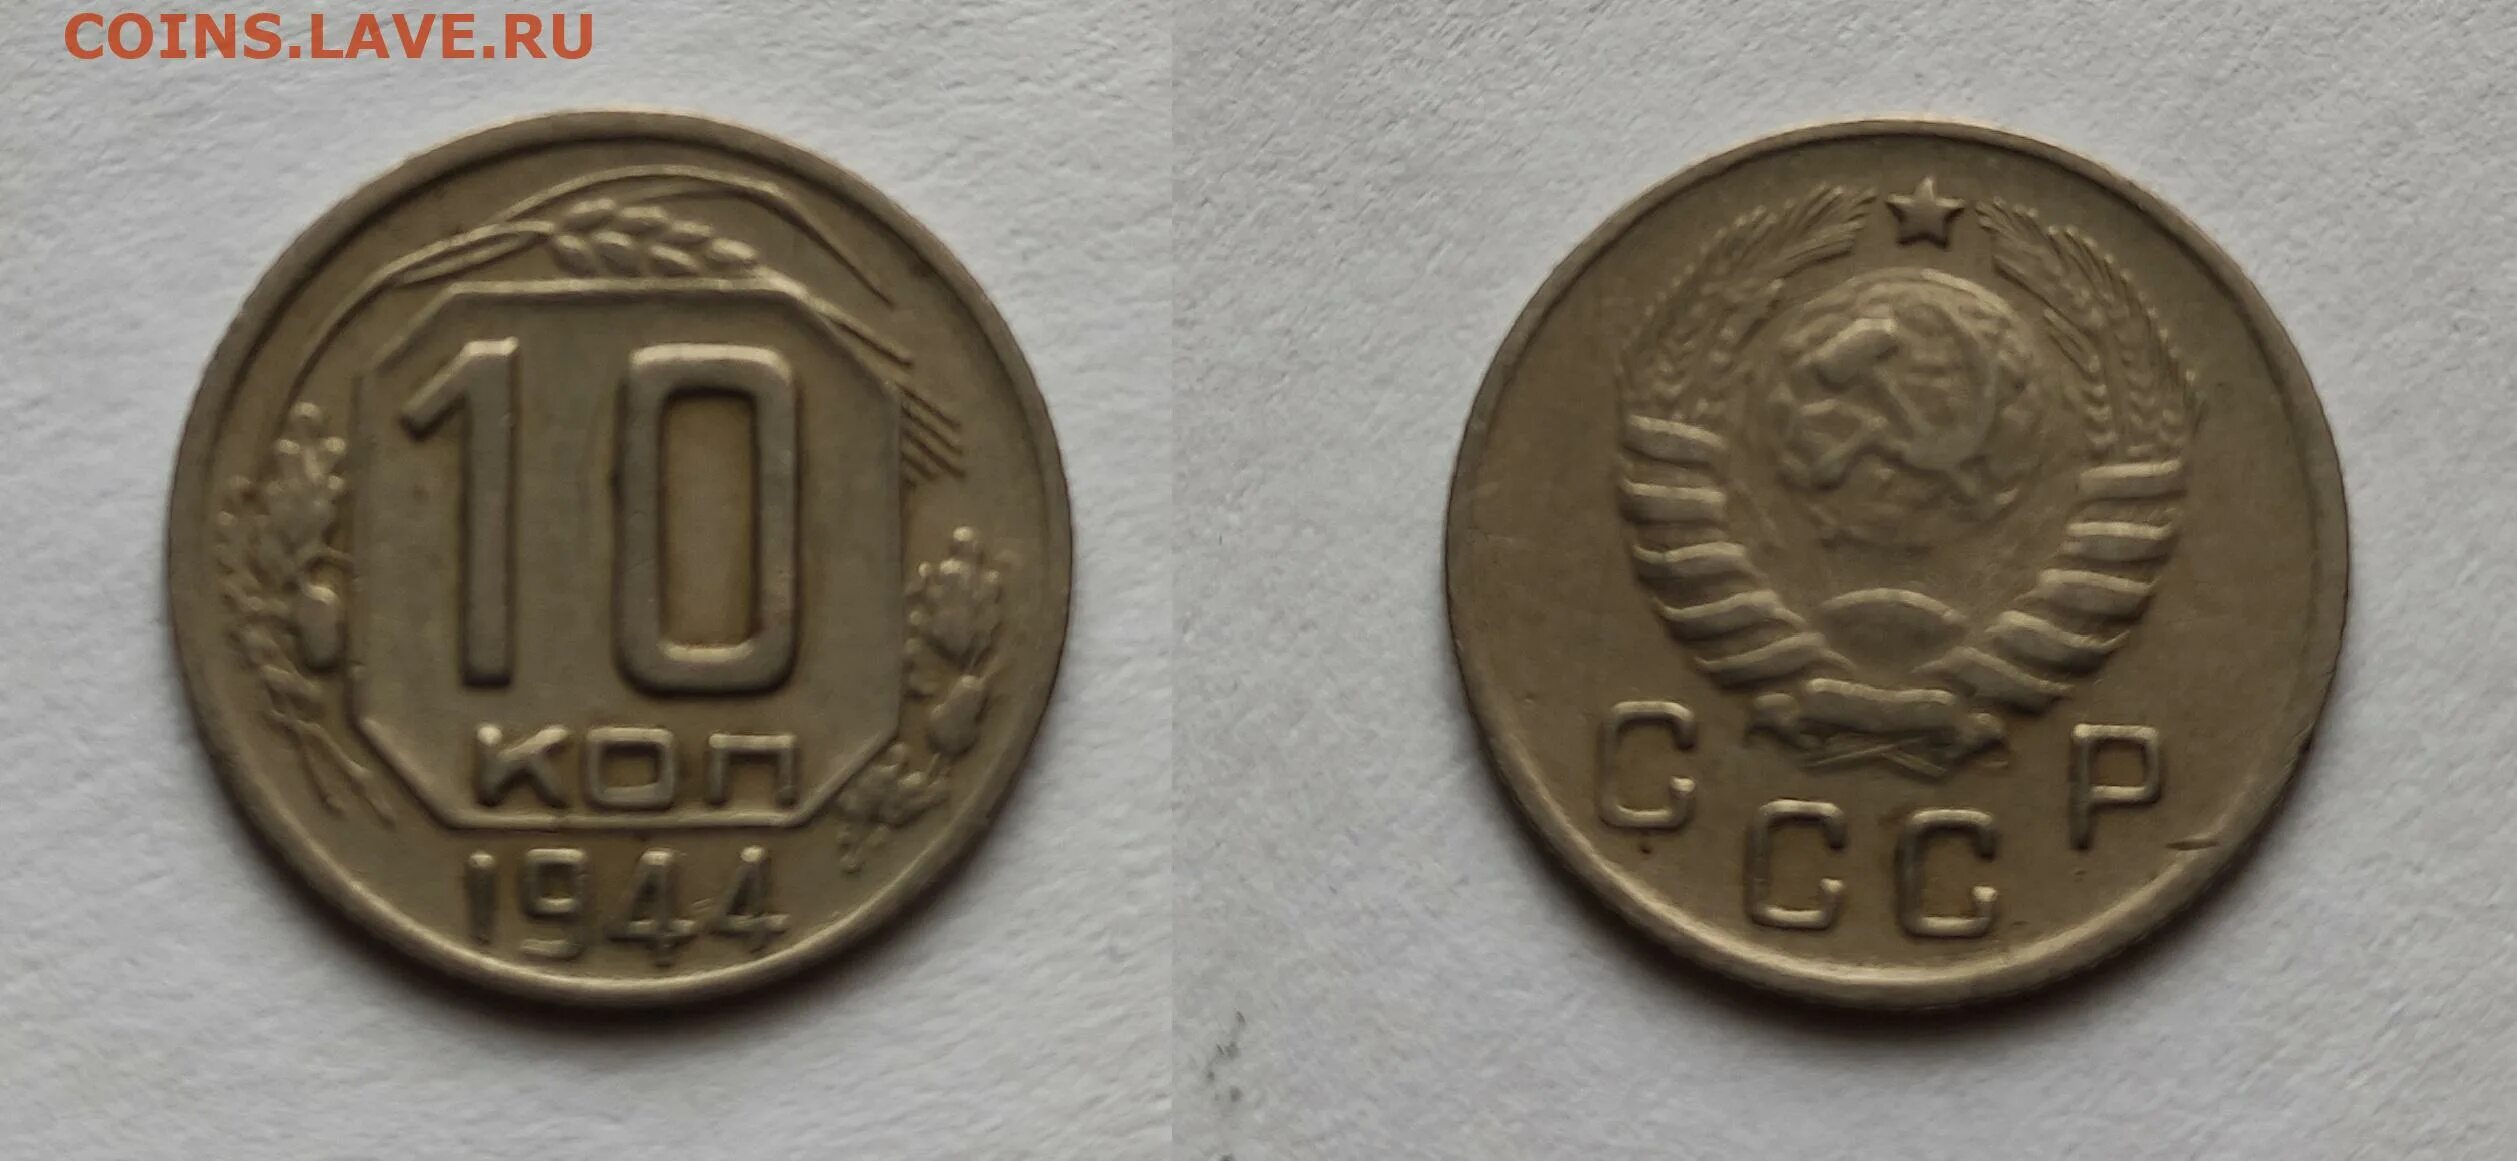 Монеты 1944 года. 10 Копеек 1944. 10 Копеек 1944 года UNC. Копейка 1944 года. 10 Копеек 1944 ревьюдетектор.